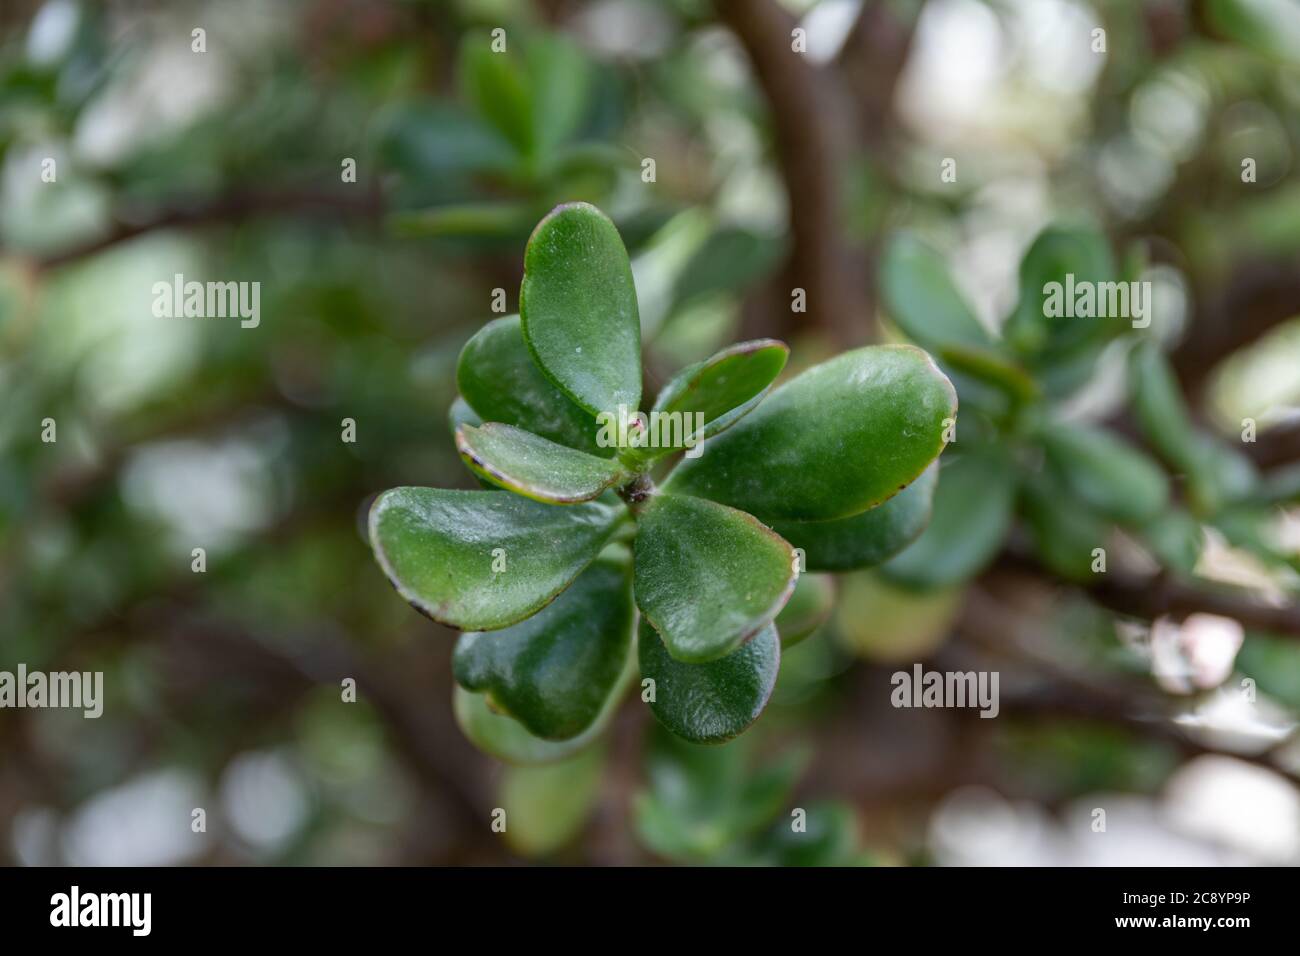 Nahaufnahme der Crassula ovata Blätter, Pflanze allgemein bekannt als Jade Pflanze, Glückspflanze, Geldpflanze oder Geldbaum Stockfoto